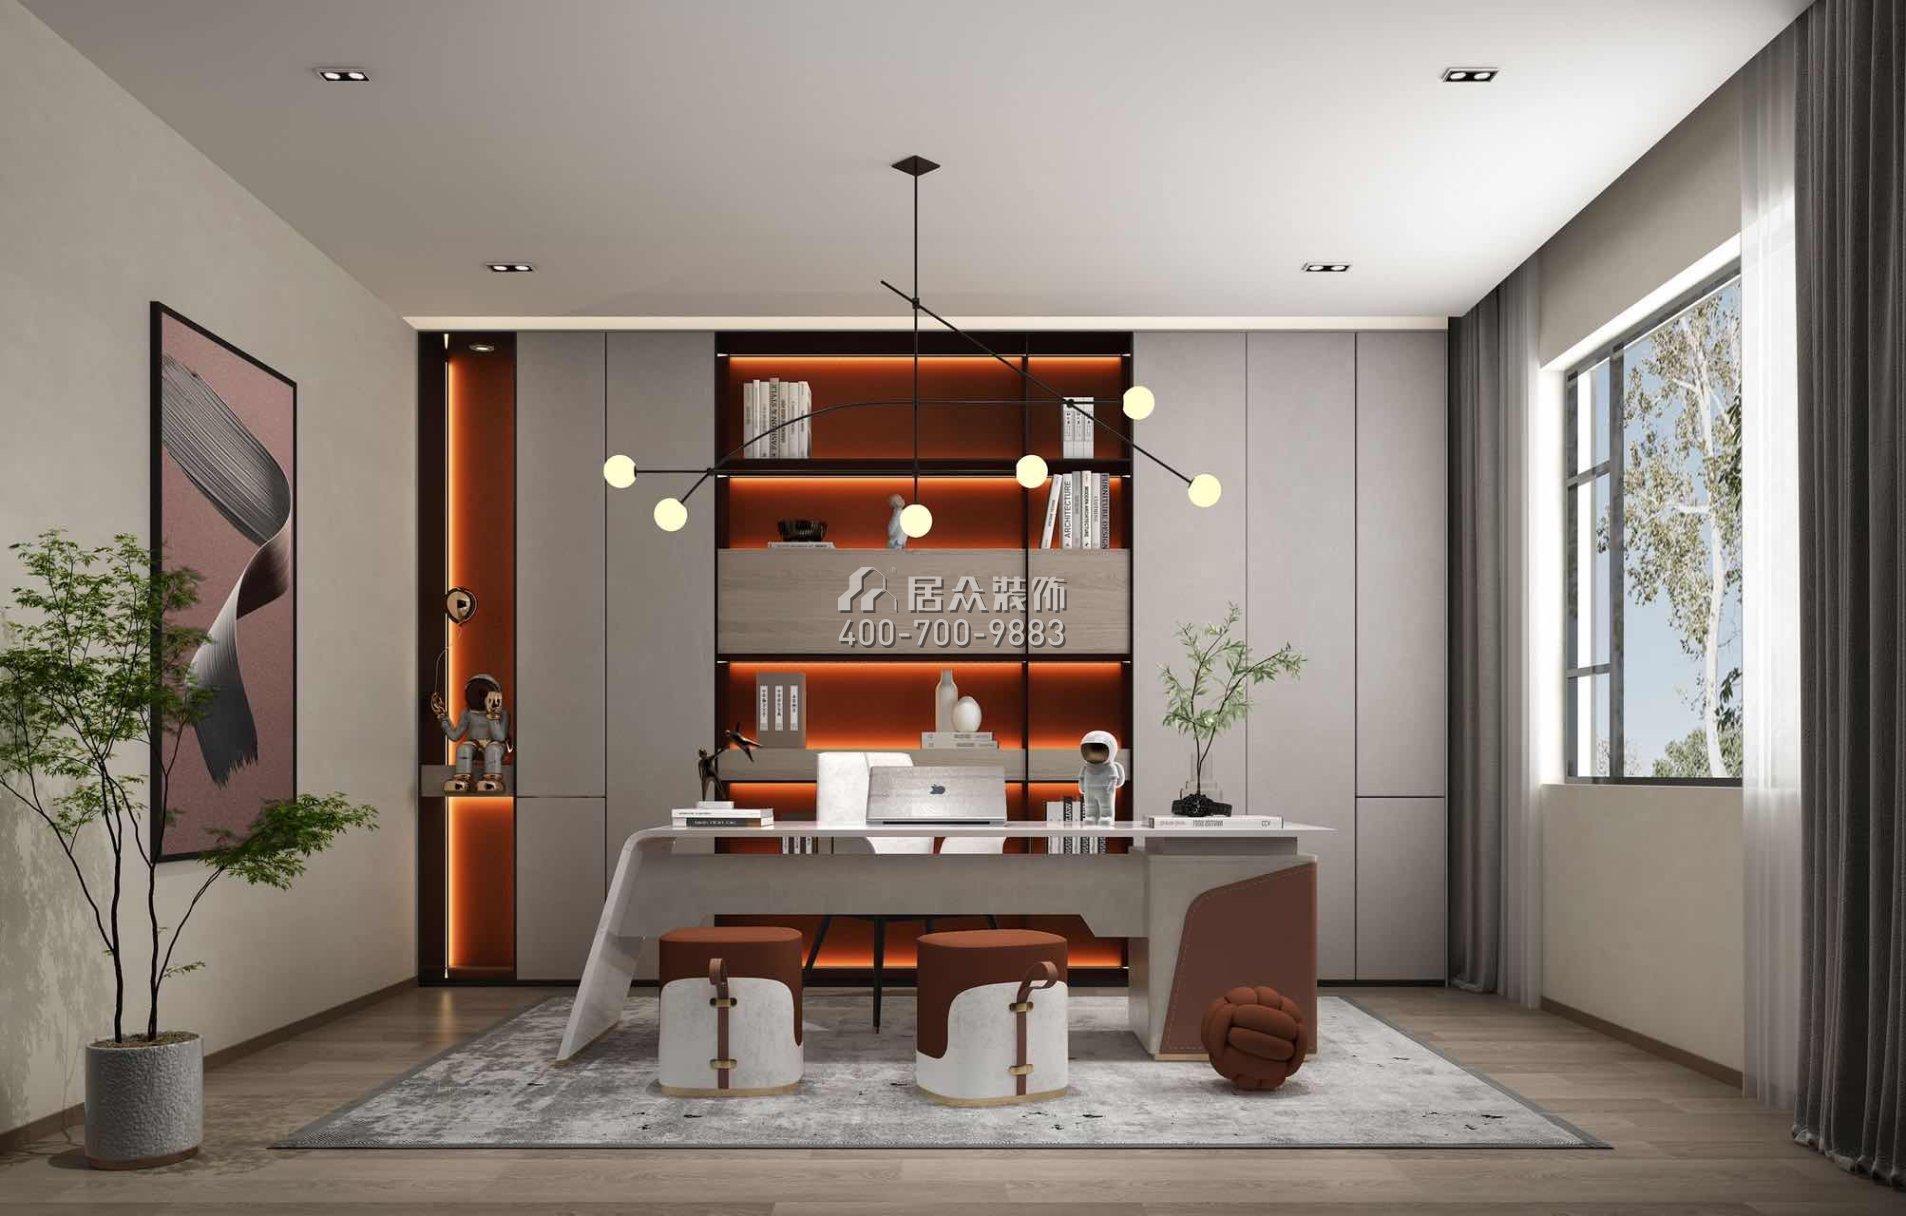 海逸豪庭321平方米現代簡約風格別墅戶型書房裝修效果圖